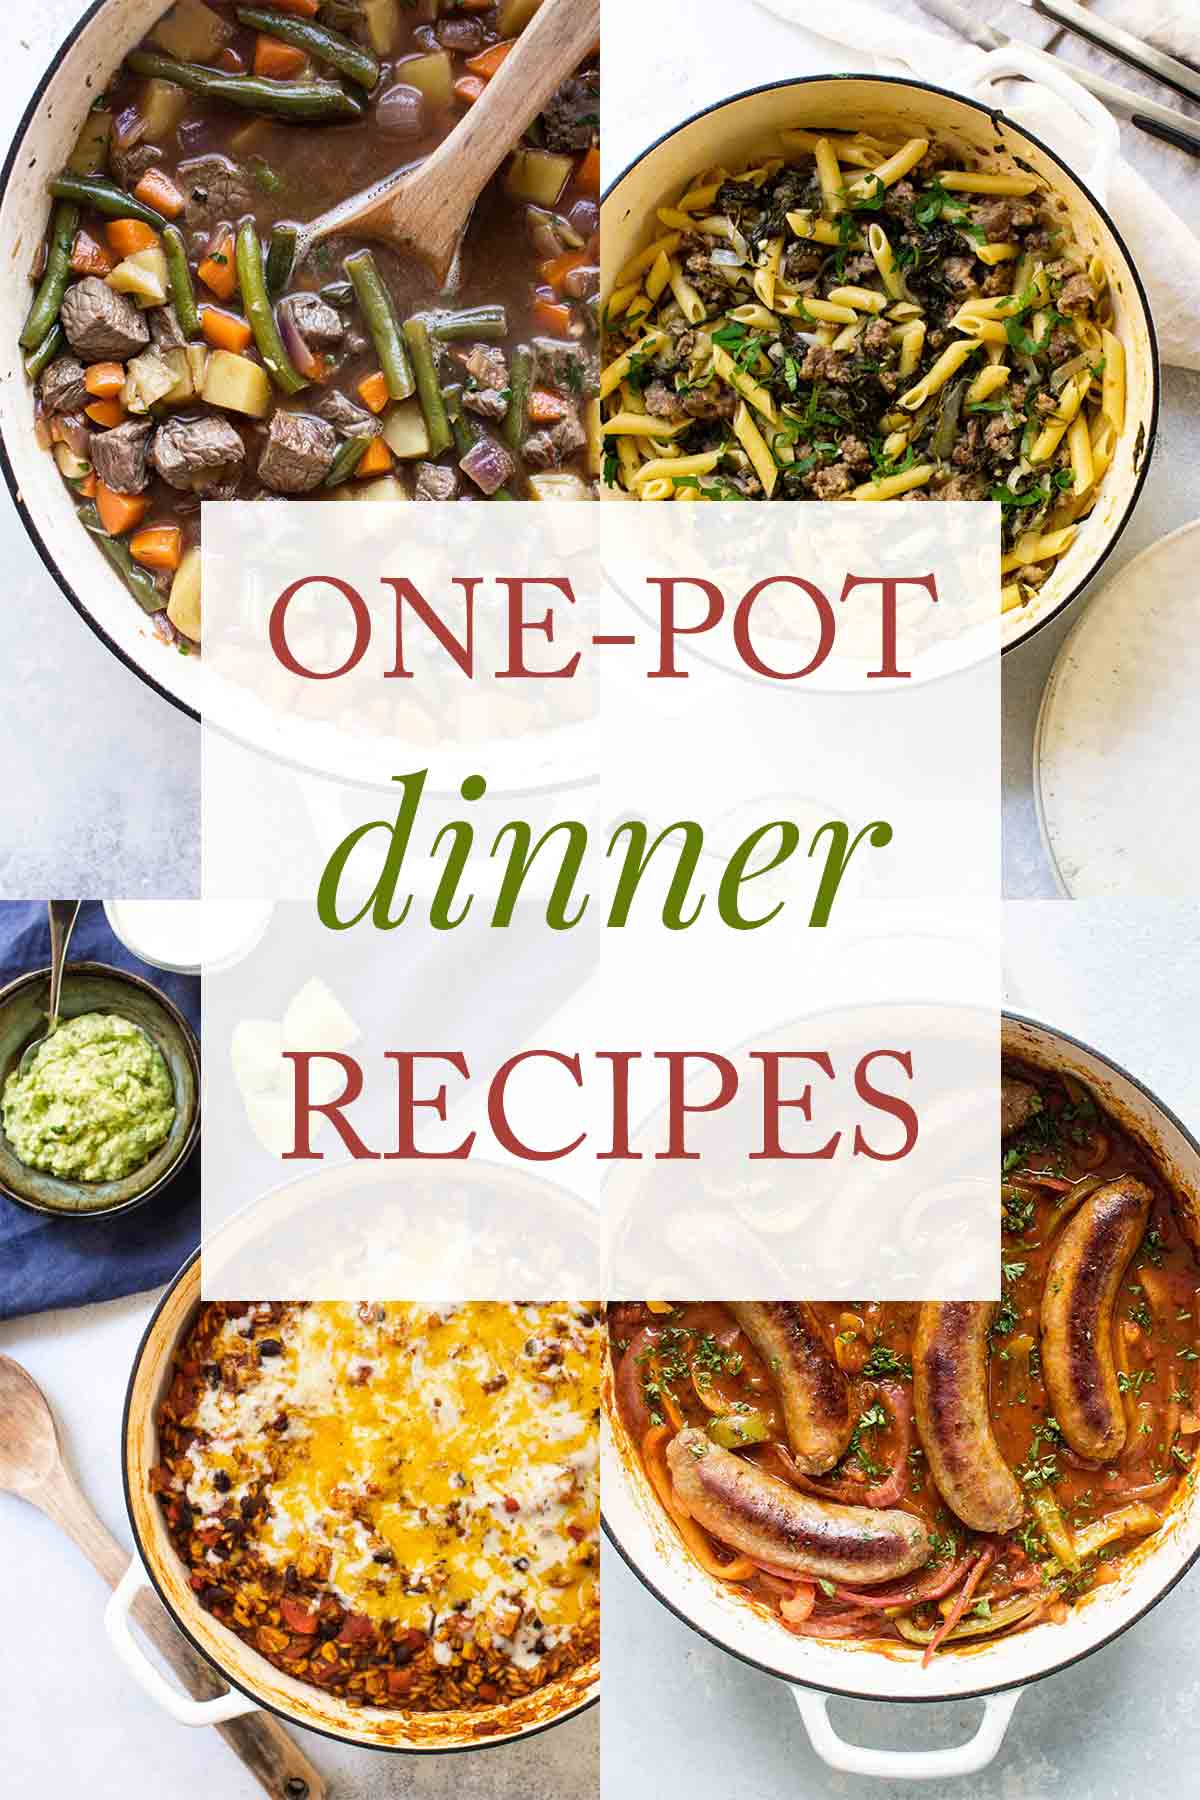 One-Pot Dinner Recipes | Girl Gone Gourmet